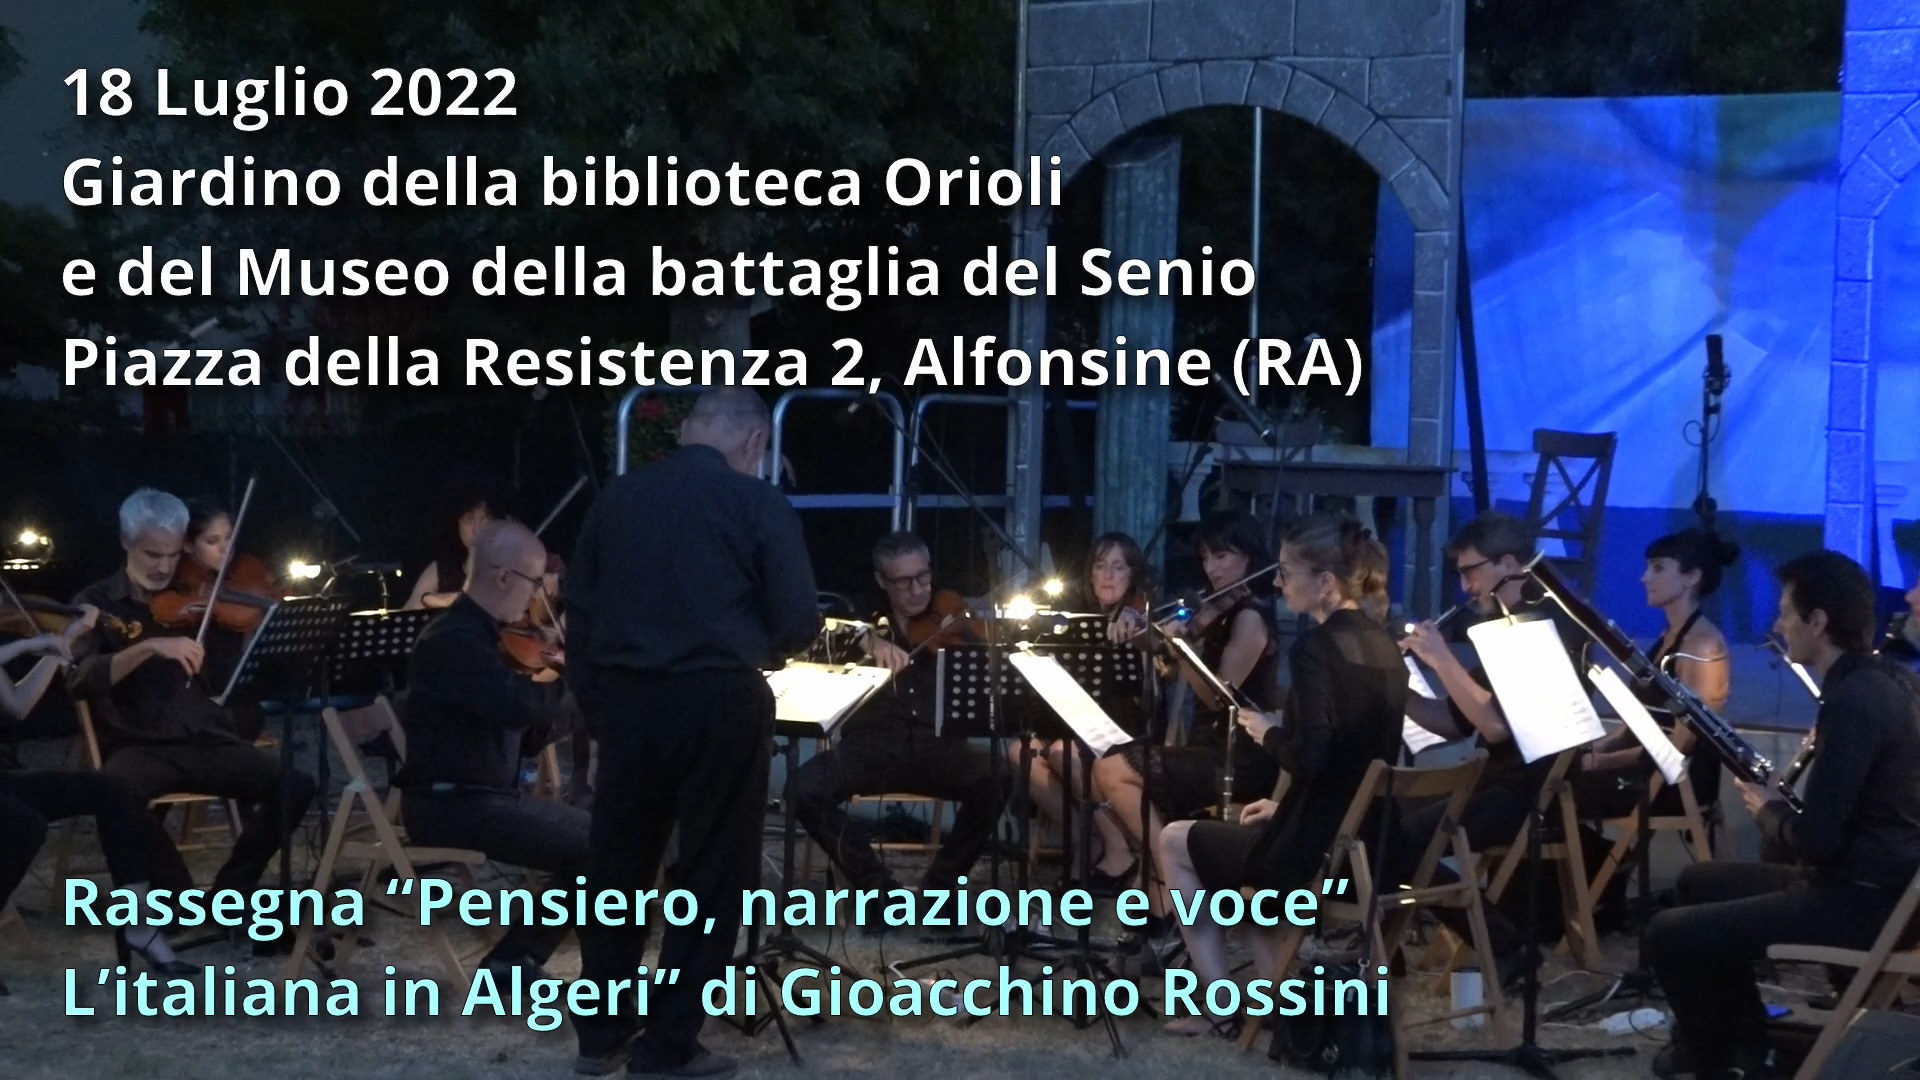 Rassegna “Pensiero, Narrazione e Voce”: “L’Italiana in Algeri” di Gioacchino Rossini